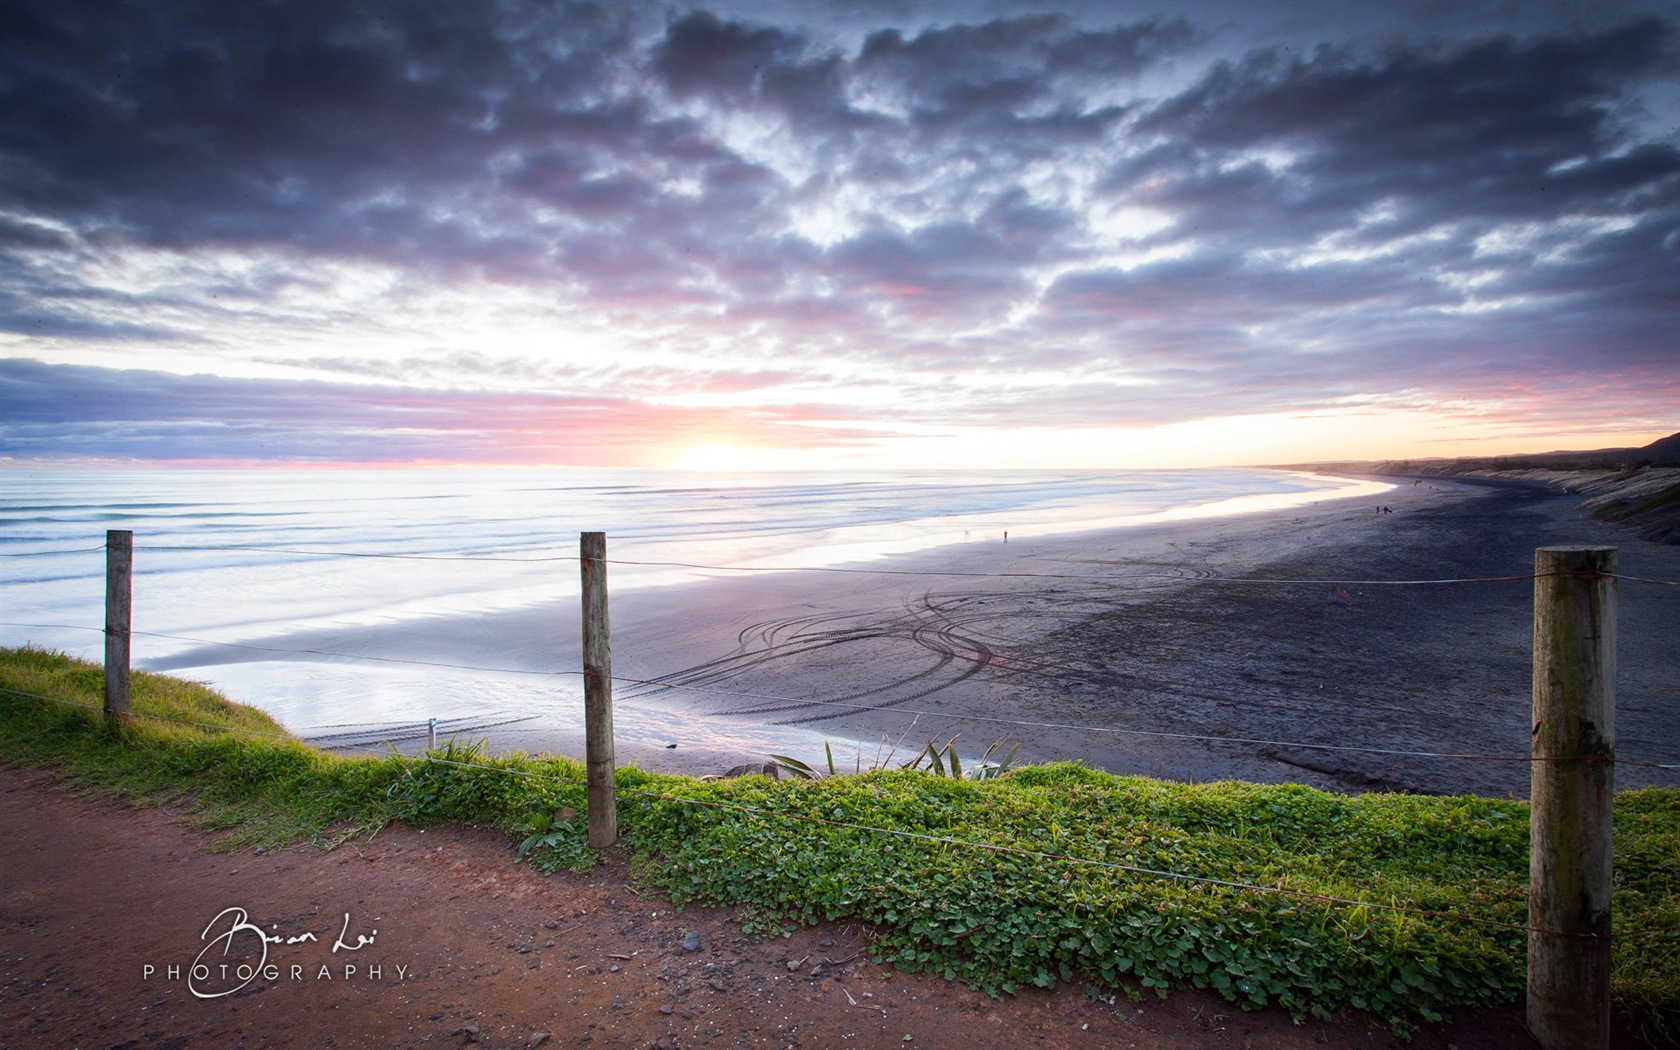 Nouvelle-Zélande Île du Nord de beaux paysages, Windows 8 fonds d'écran thématiques #16 - 1680x1050